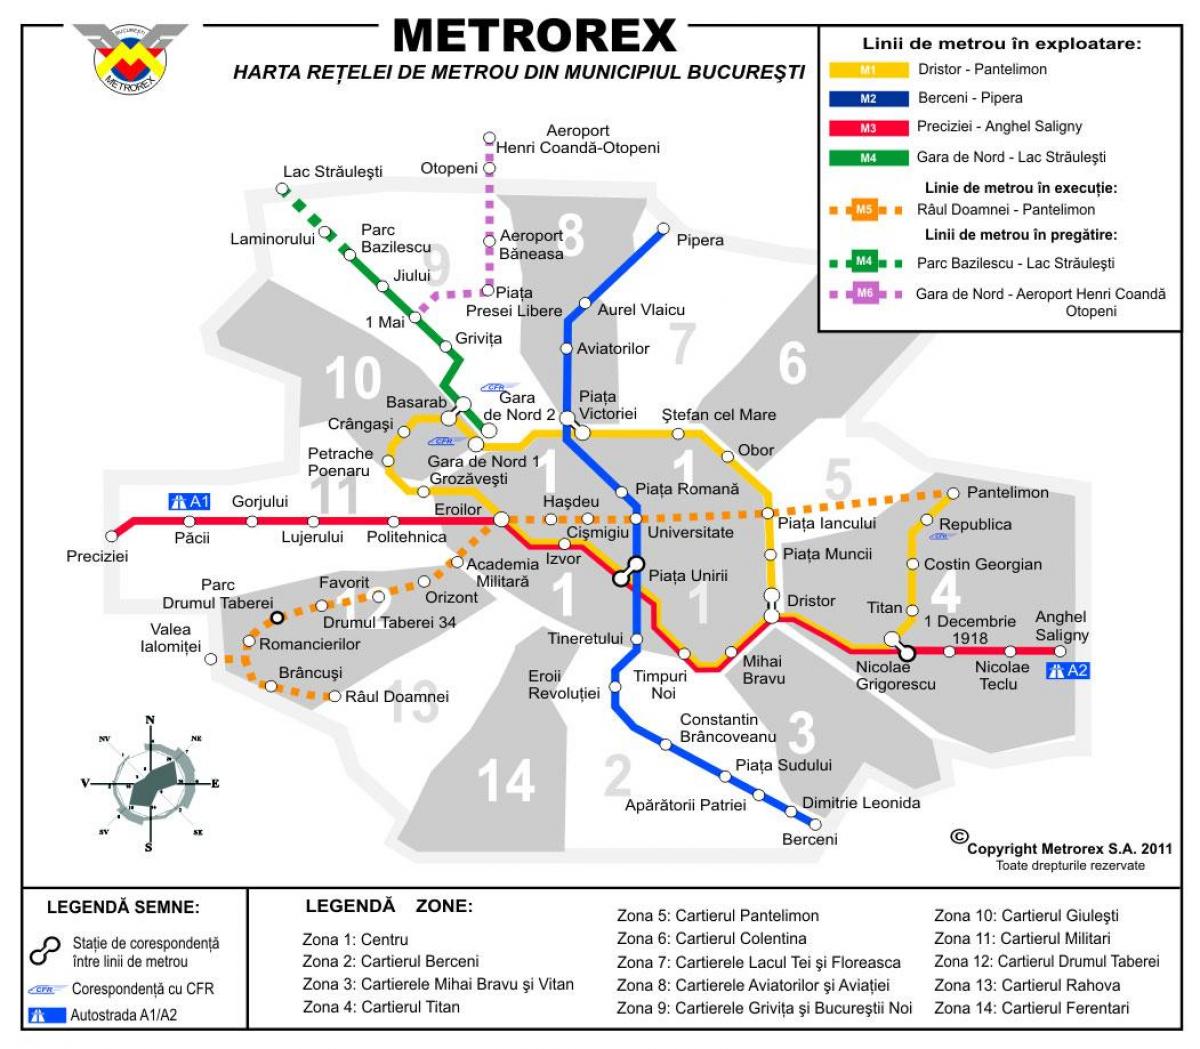 Karta över metrorex 